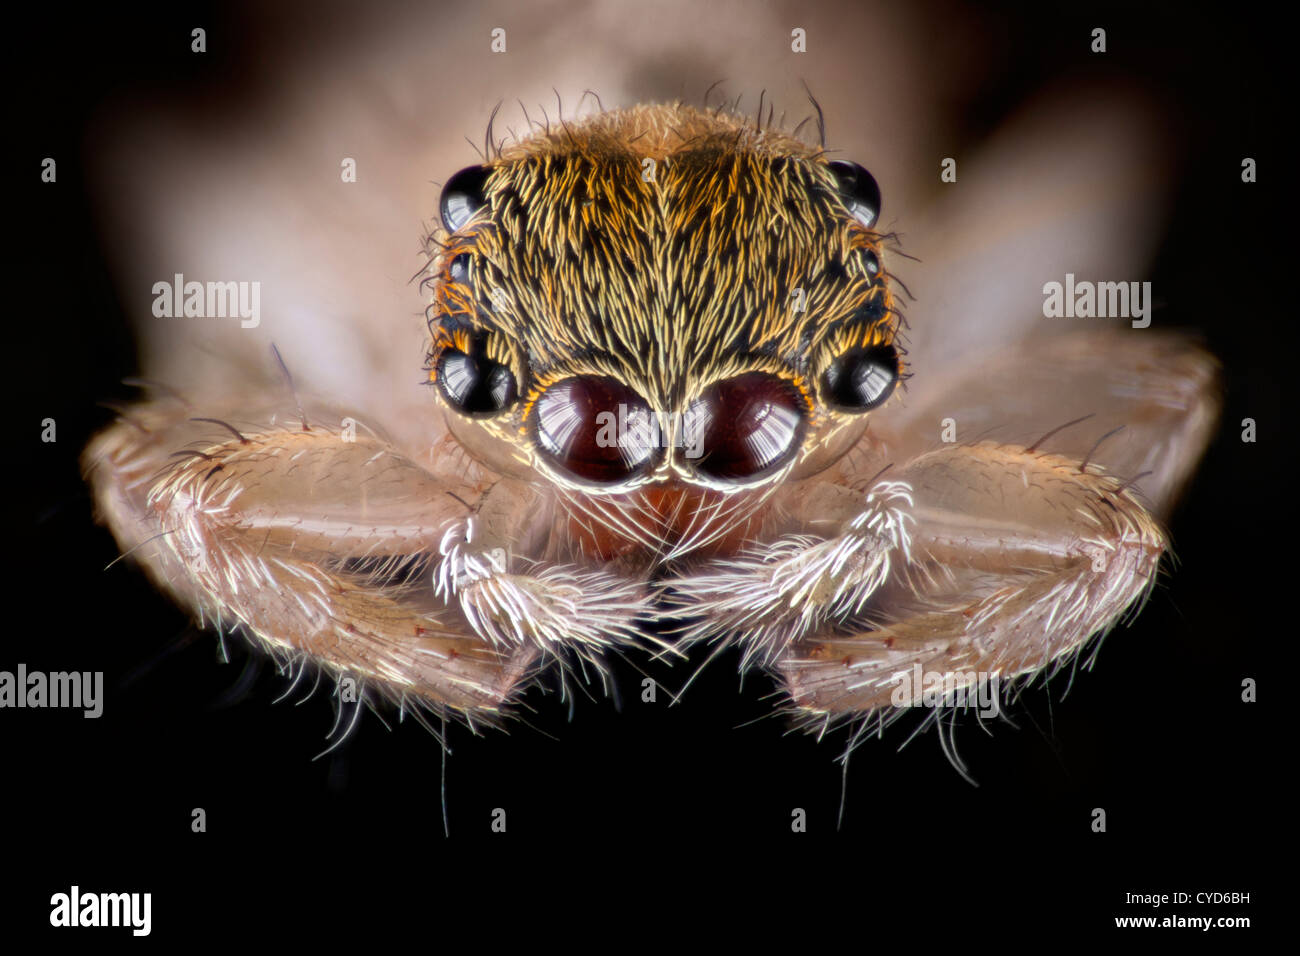 Alta macro fotografía de una araña saltando de Malasia, mostrando los muchos ojos. Posiblemente Telamonia sp. Foto de stock